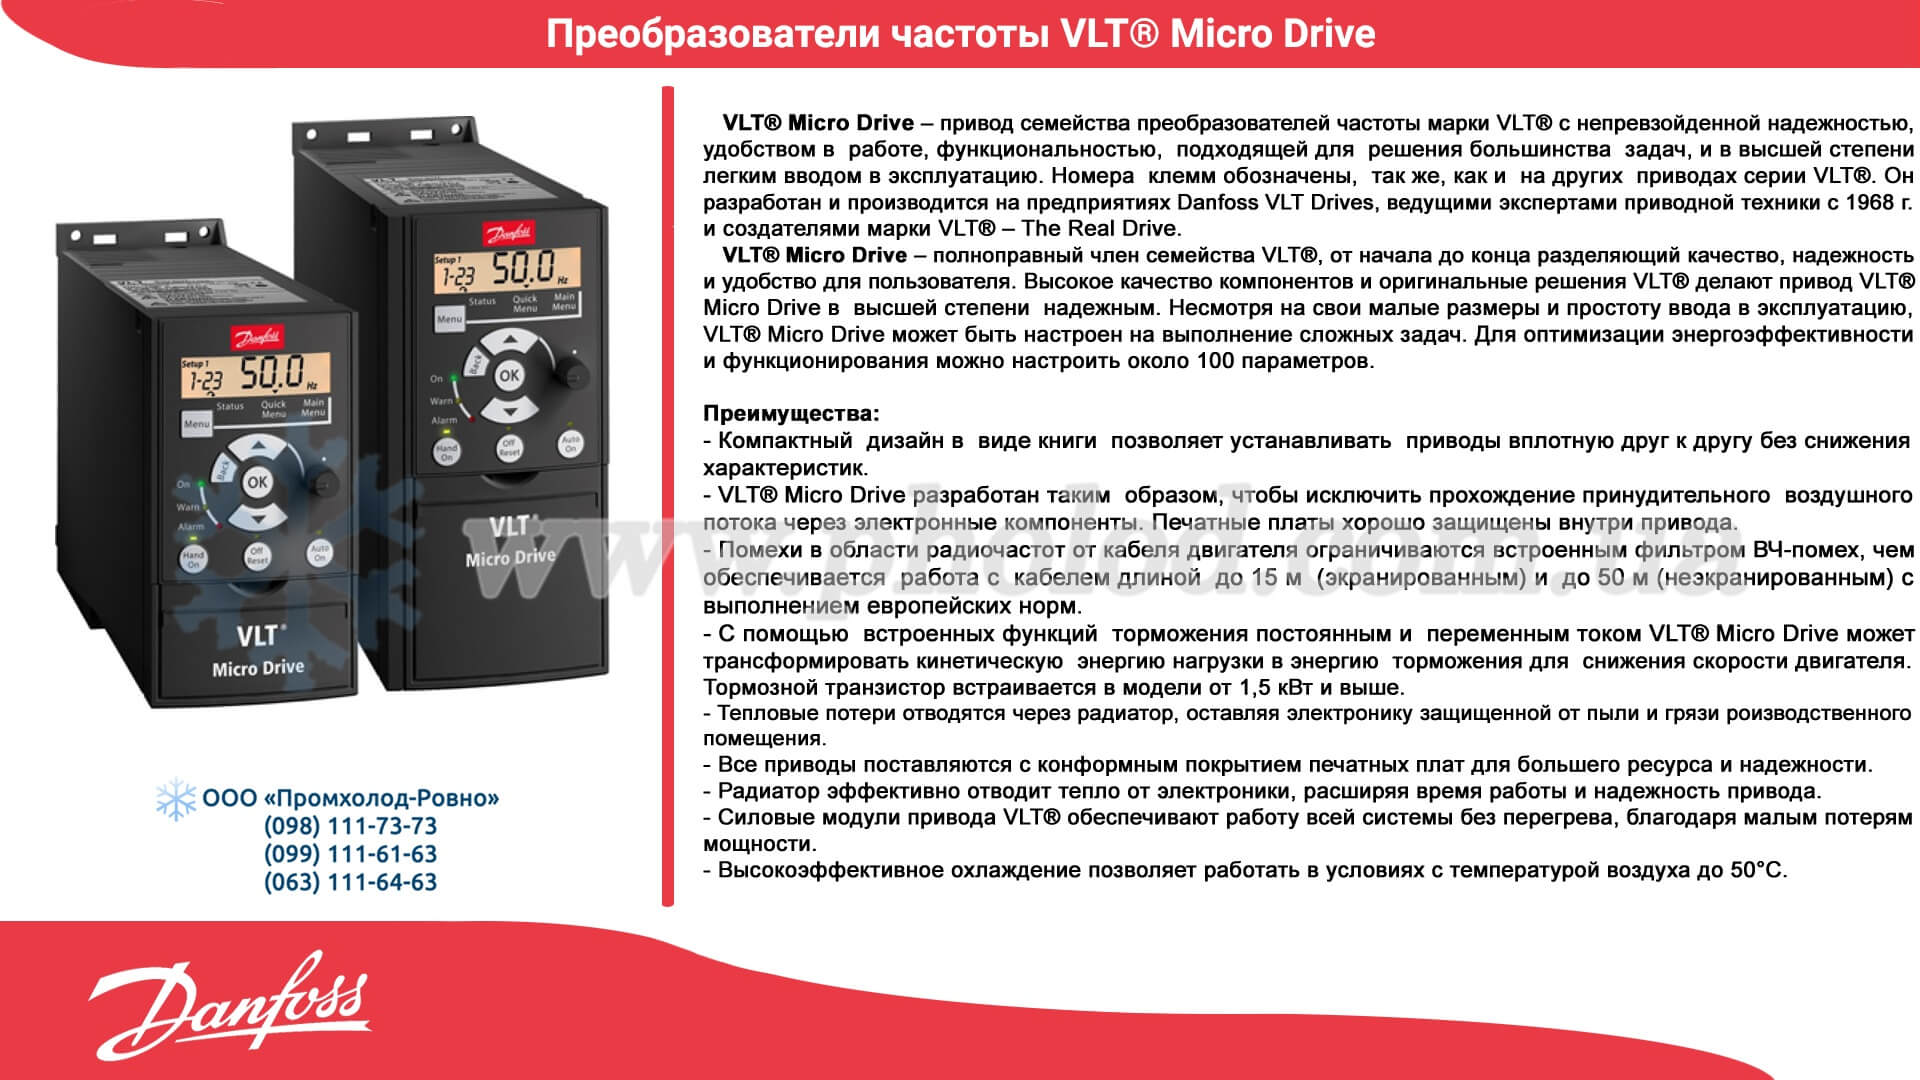 Danfoss VLT Micro Drive FC-051P